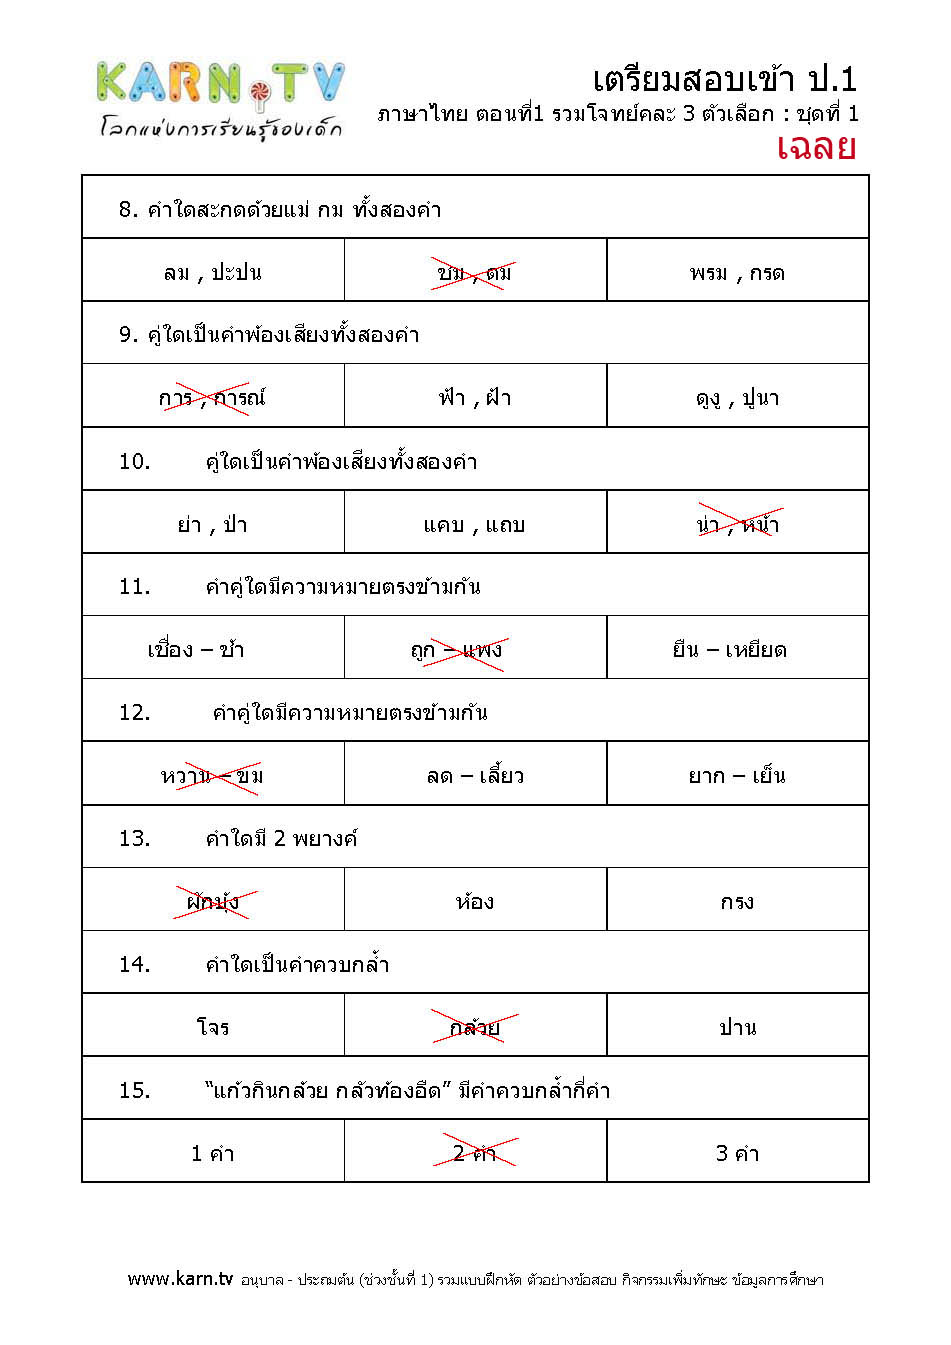 ภาษาไทย รวมโจทย์คละ 3 ตัวเลือก ชุด 1 (เฉลย)